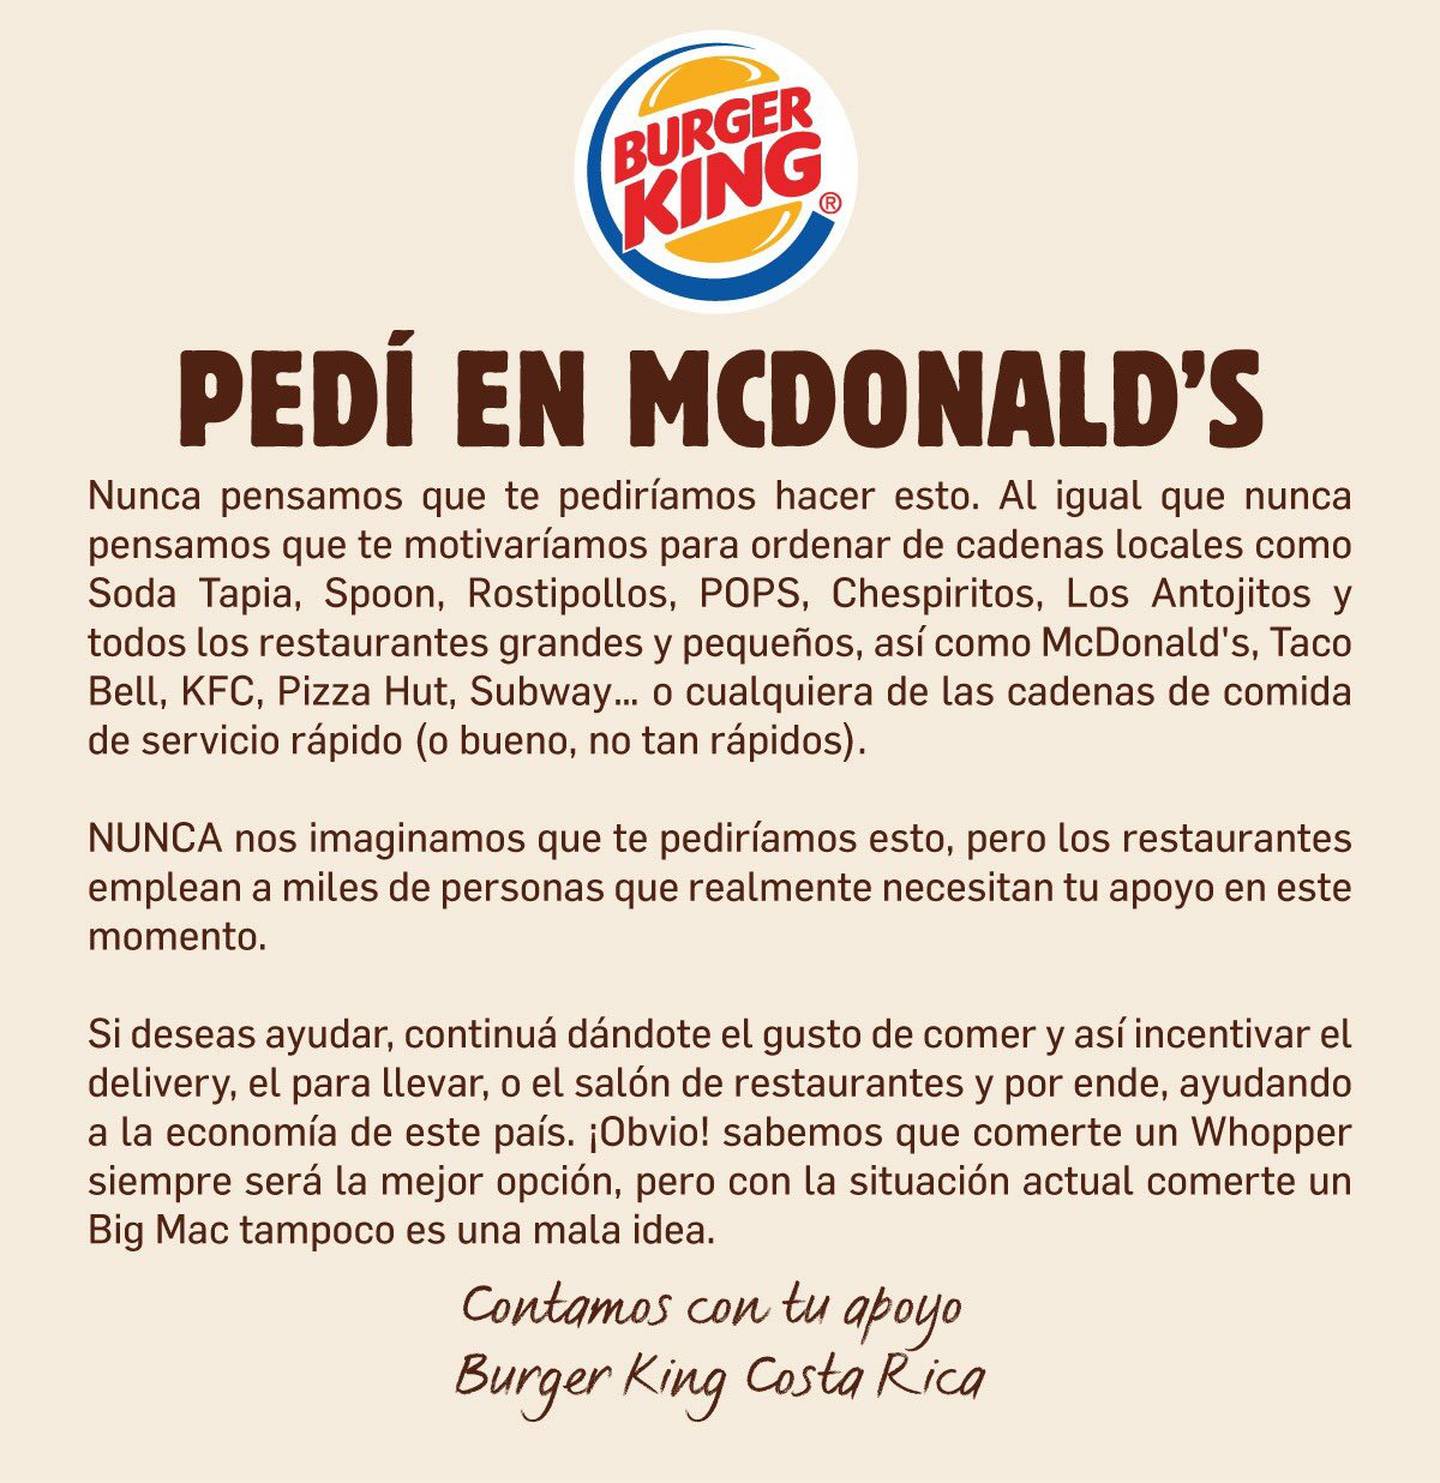 Puede verse como una estrategia publicitaria, de mercadeo, sin embargo, el mundo entero está impactado, y la publicidad ya llegó a Tiquicia, porque Burger King está haciendo campaña mundial para que todos comamos en McDonald’s